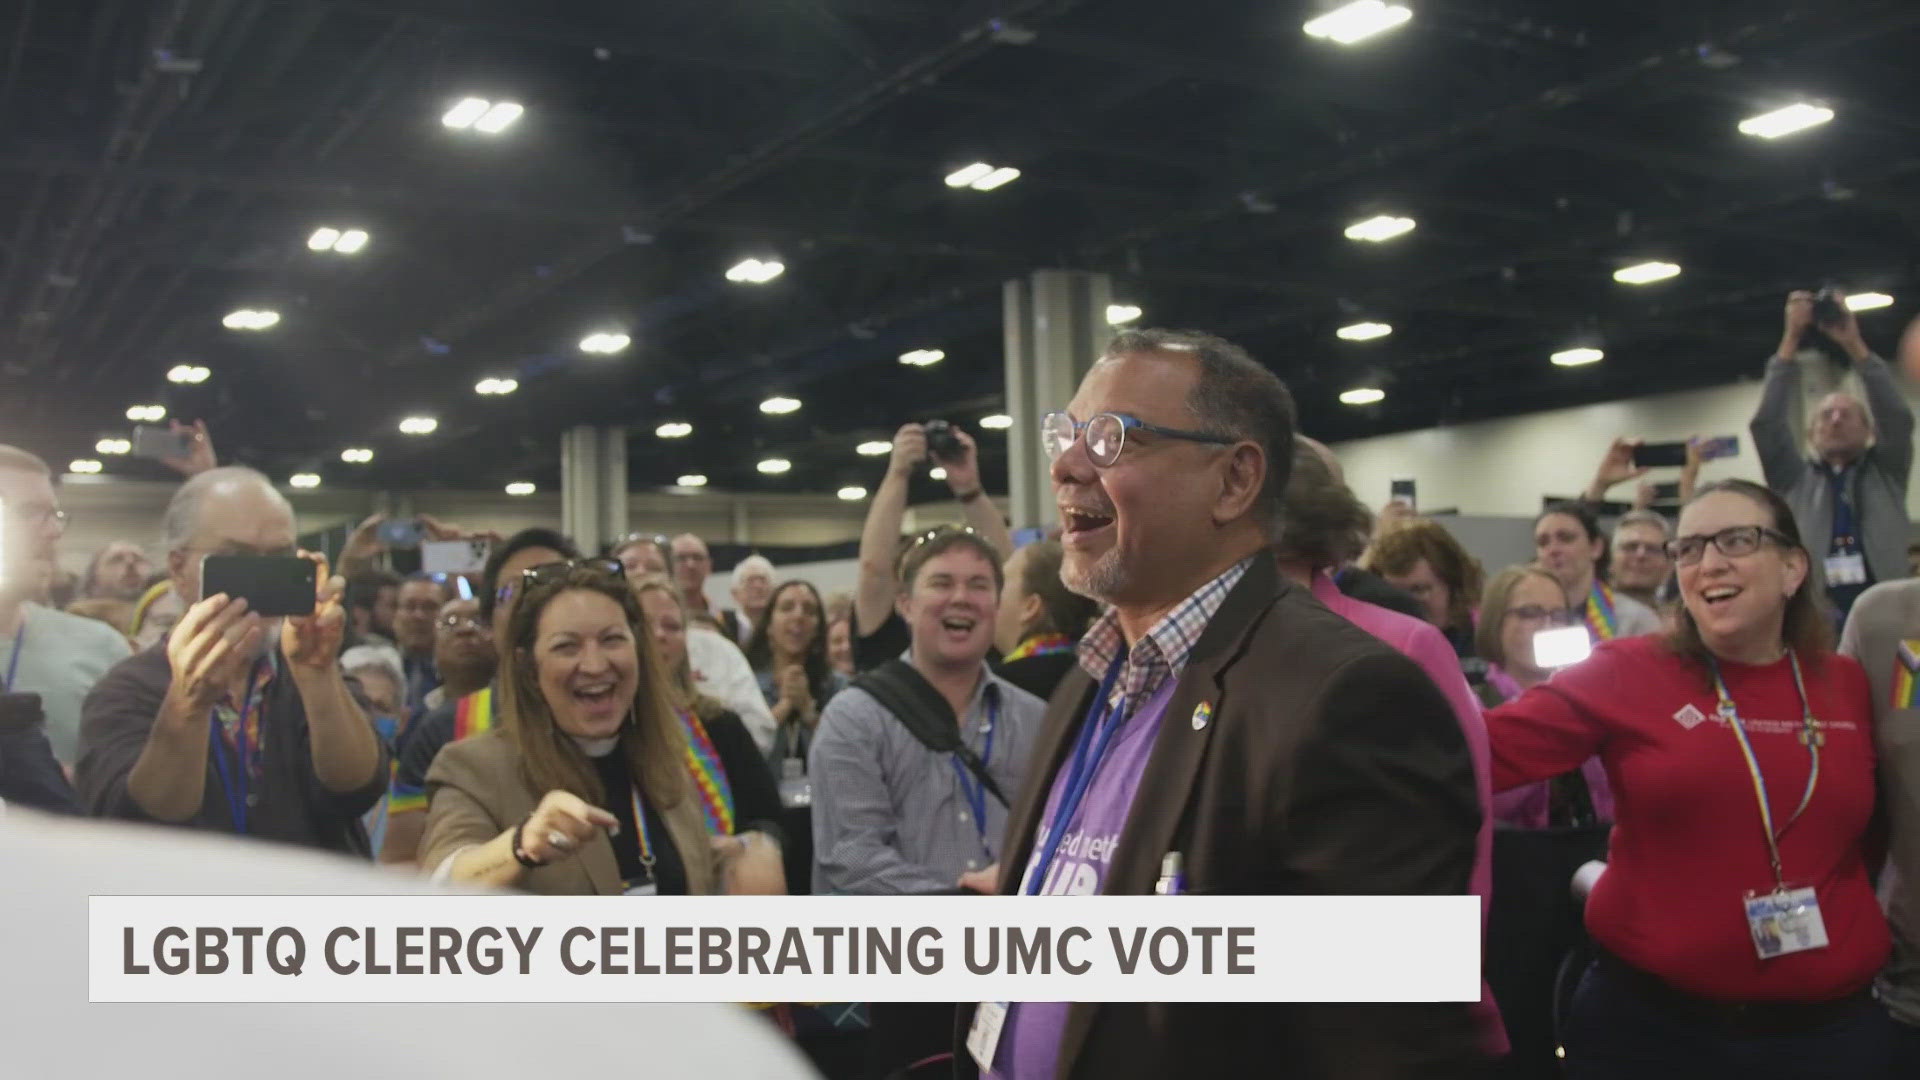 LGBTQ Clergy celebrating vote by United Methodist Church